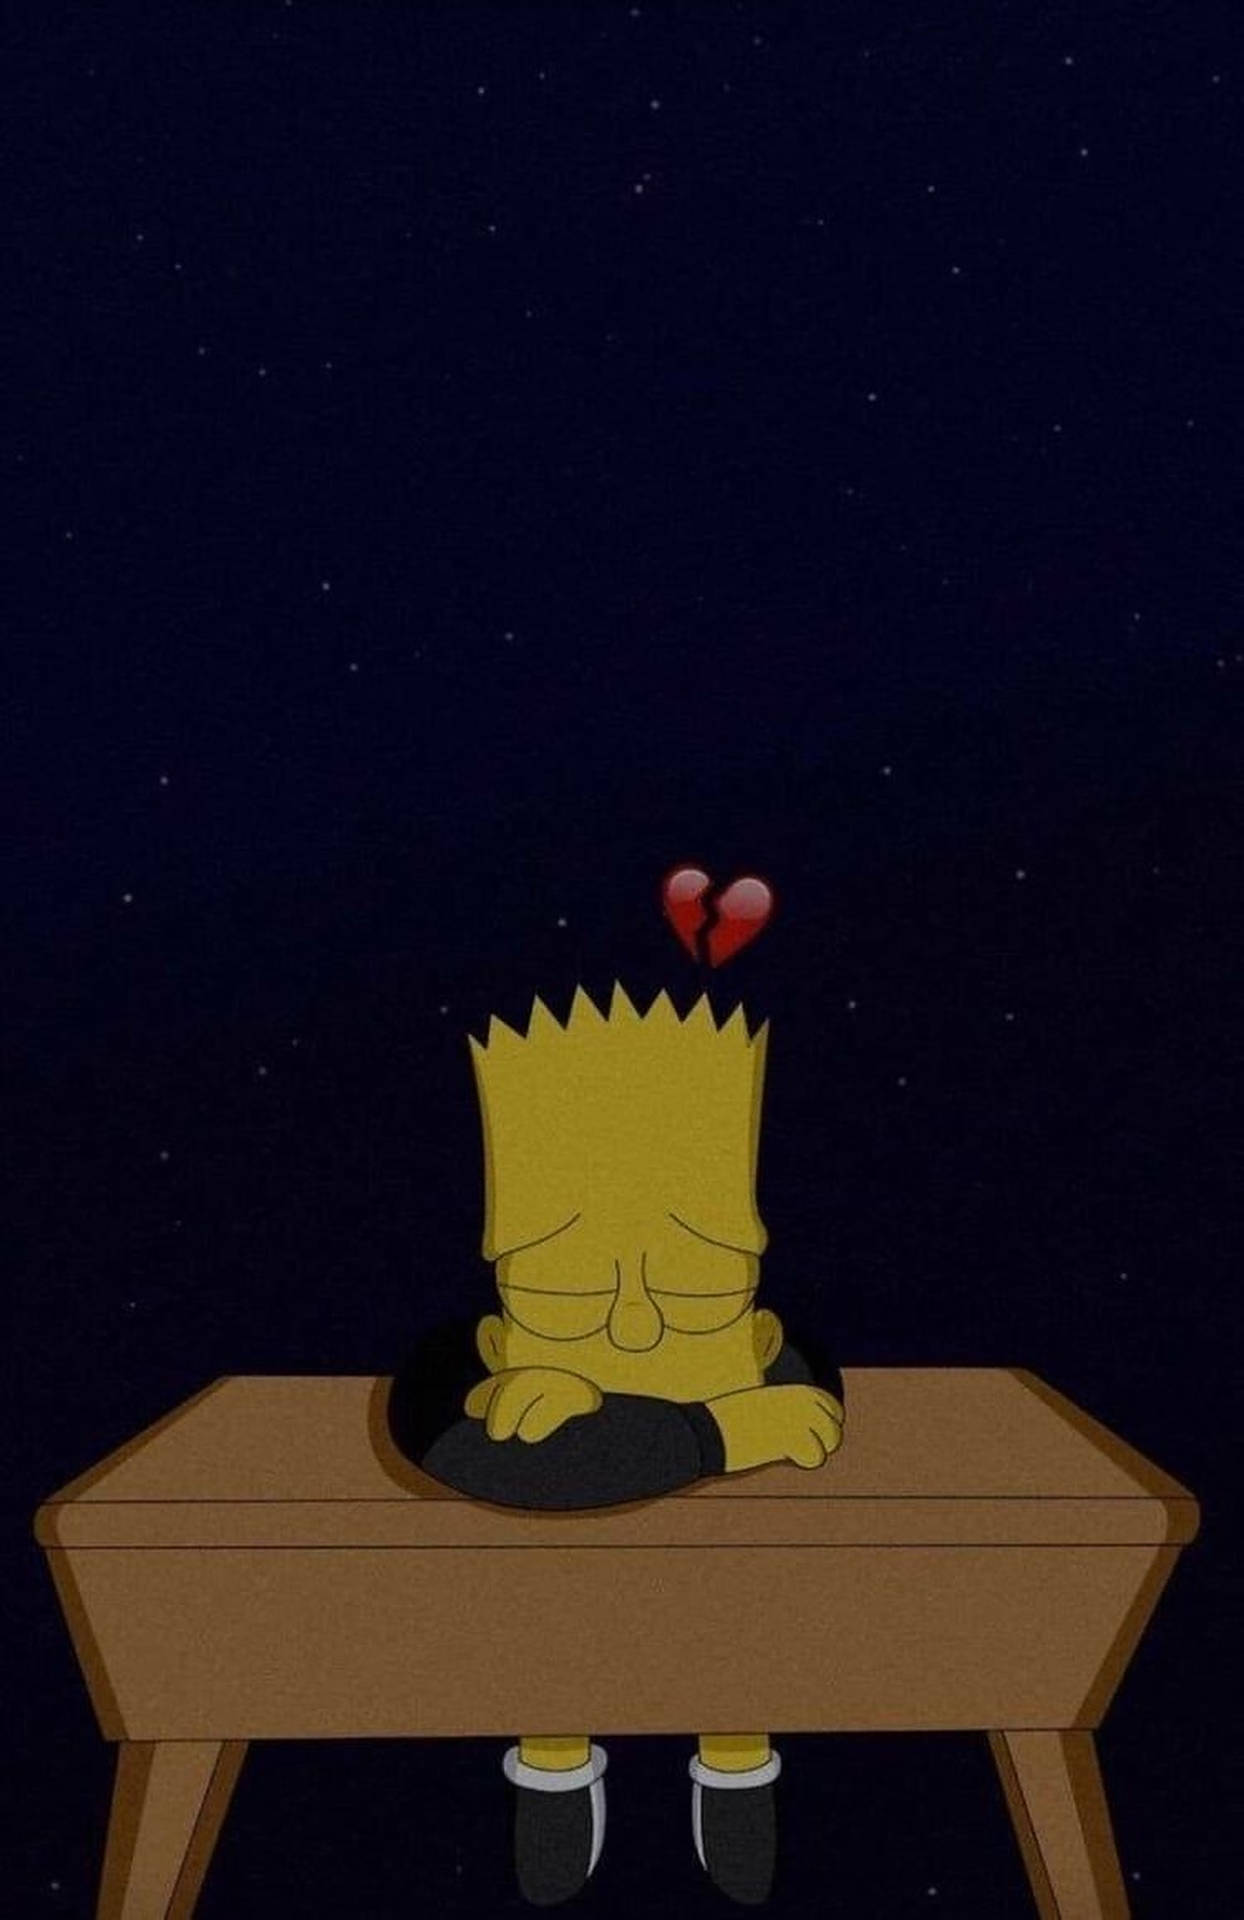 Sad Bart Simpsons On Desk